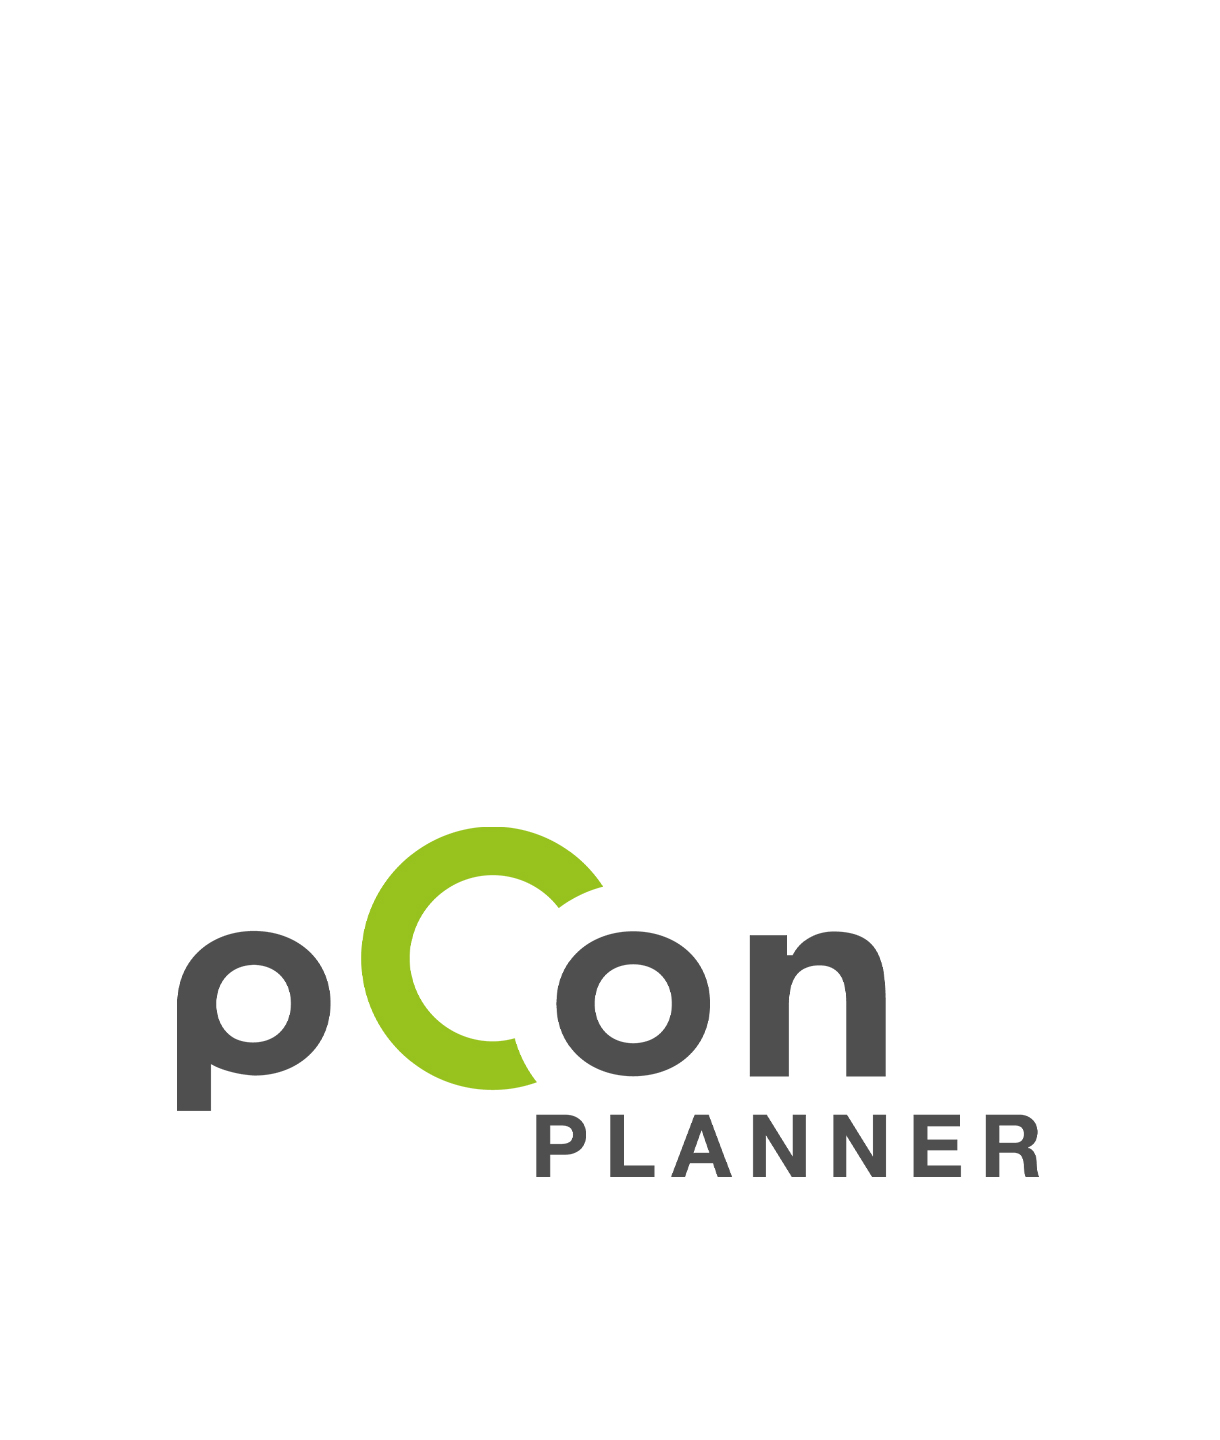 pCon Planner bordbar